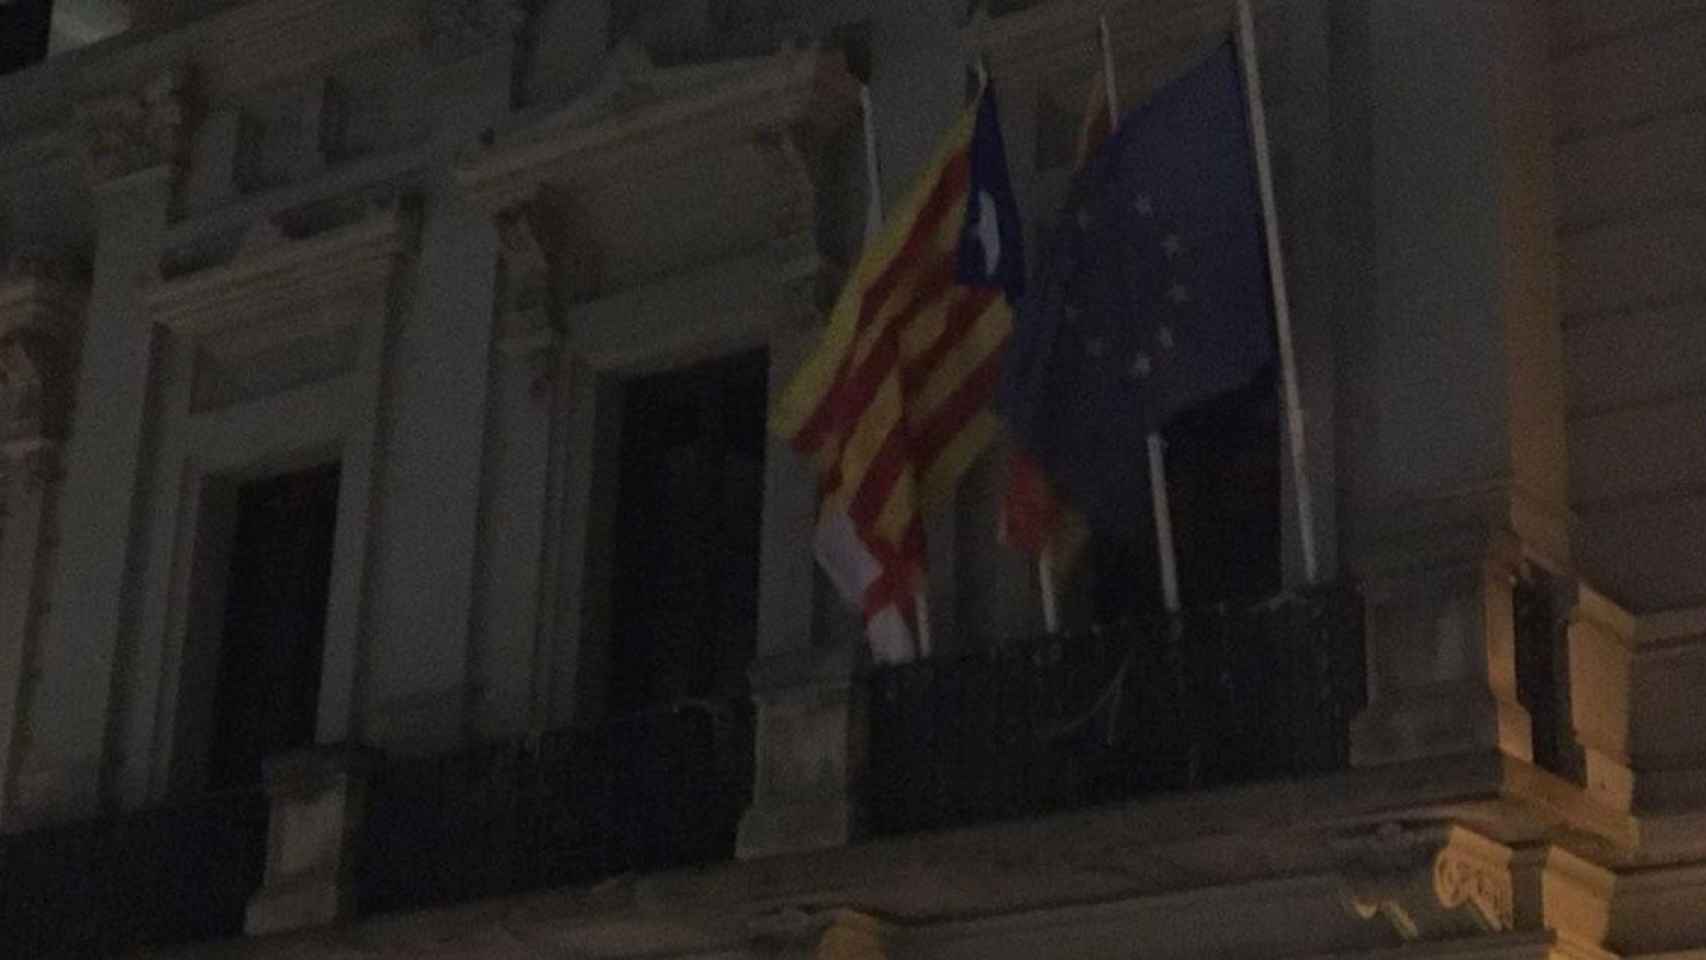 Una bandera estelada en la sede del Ayuntamiento en el distrito de Les Corts / @CDRLesCorts